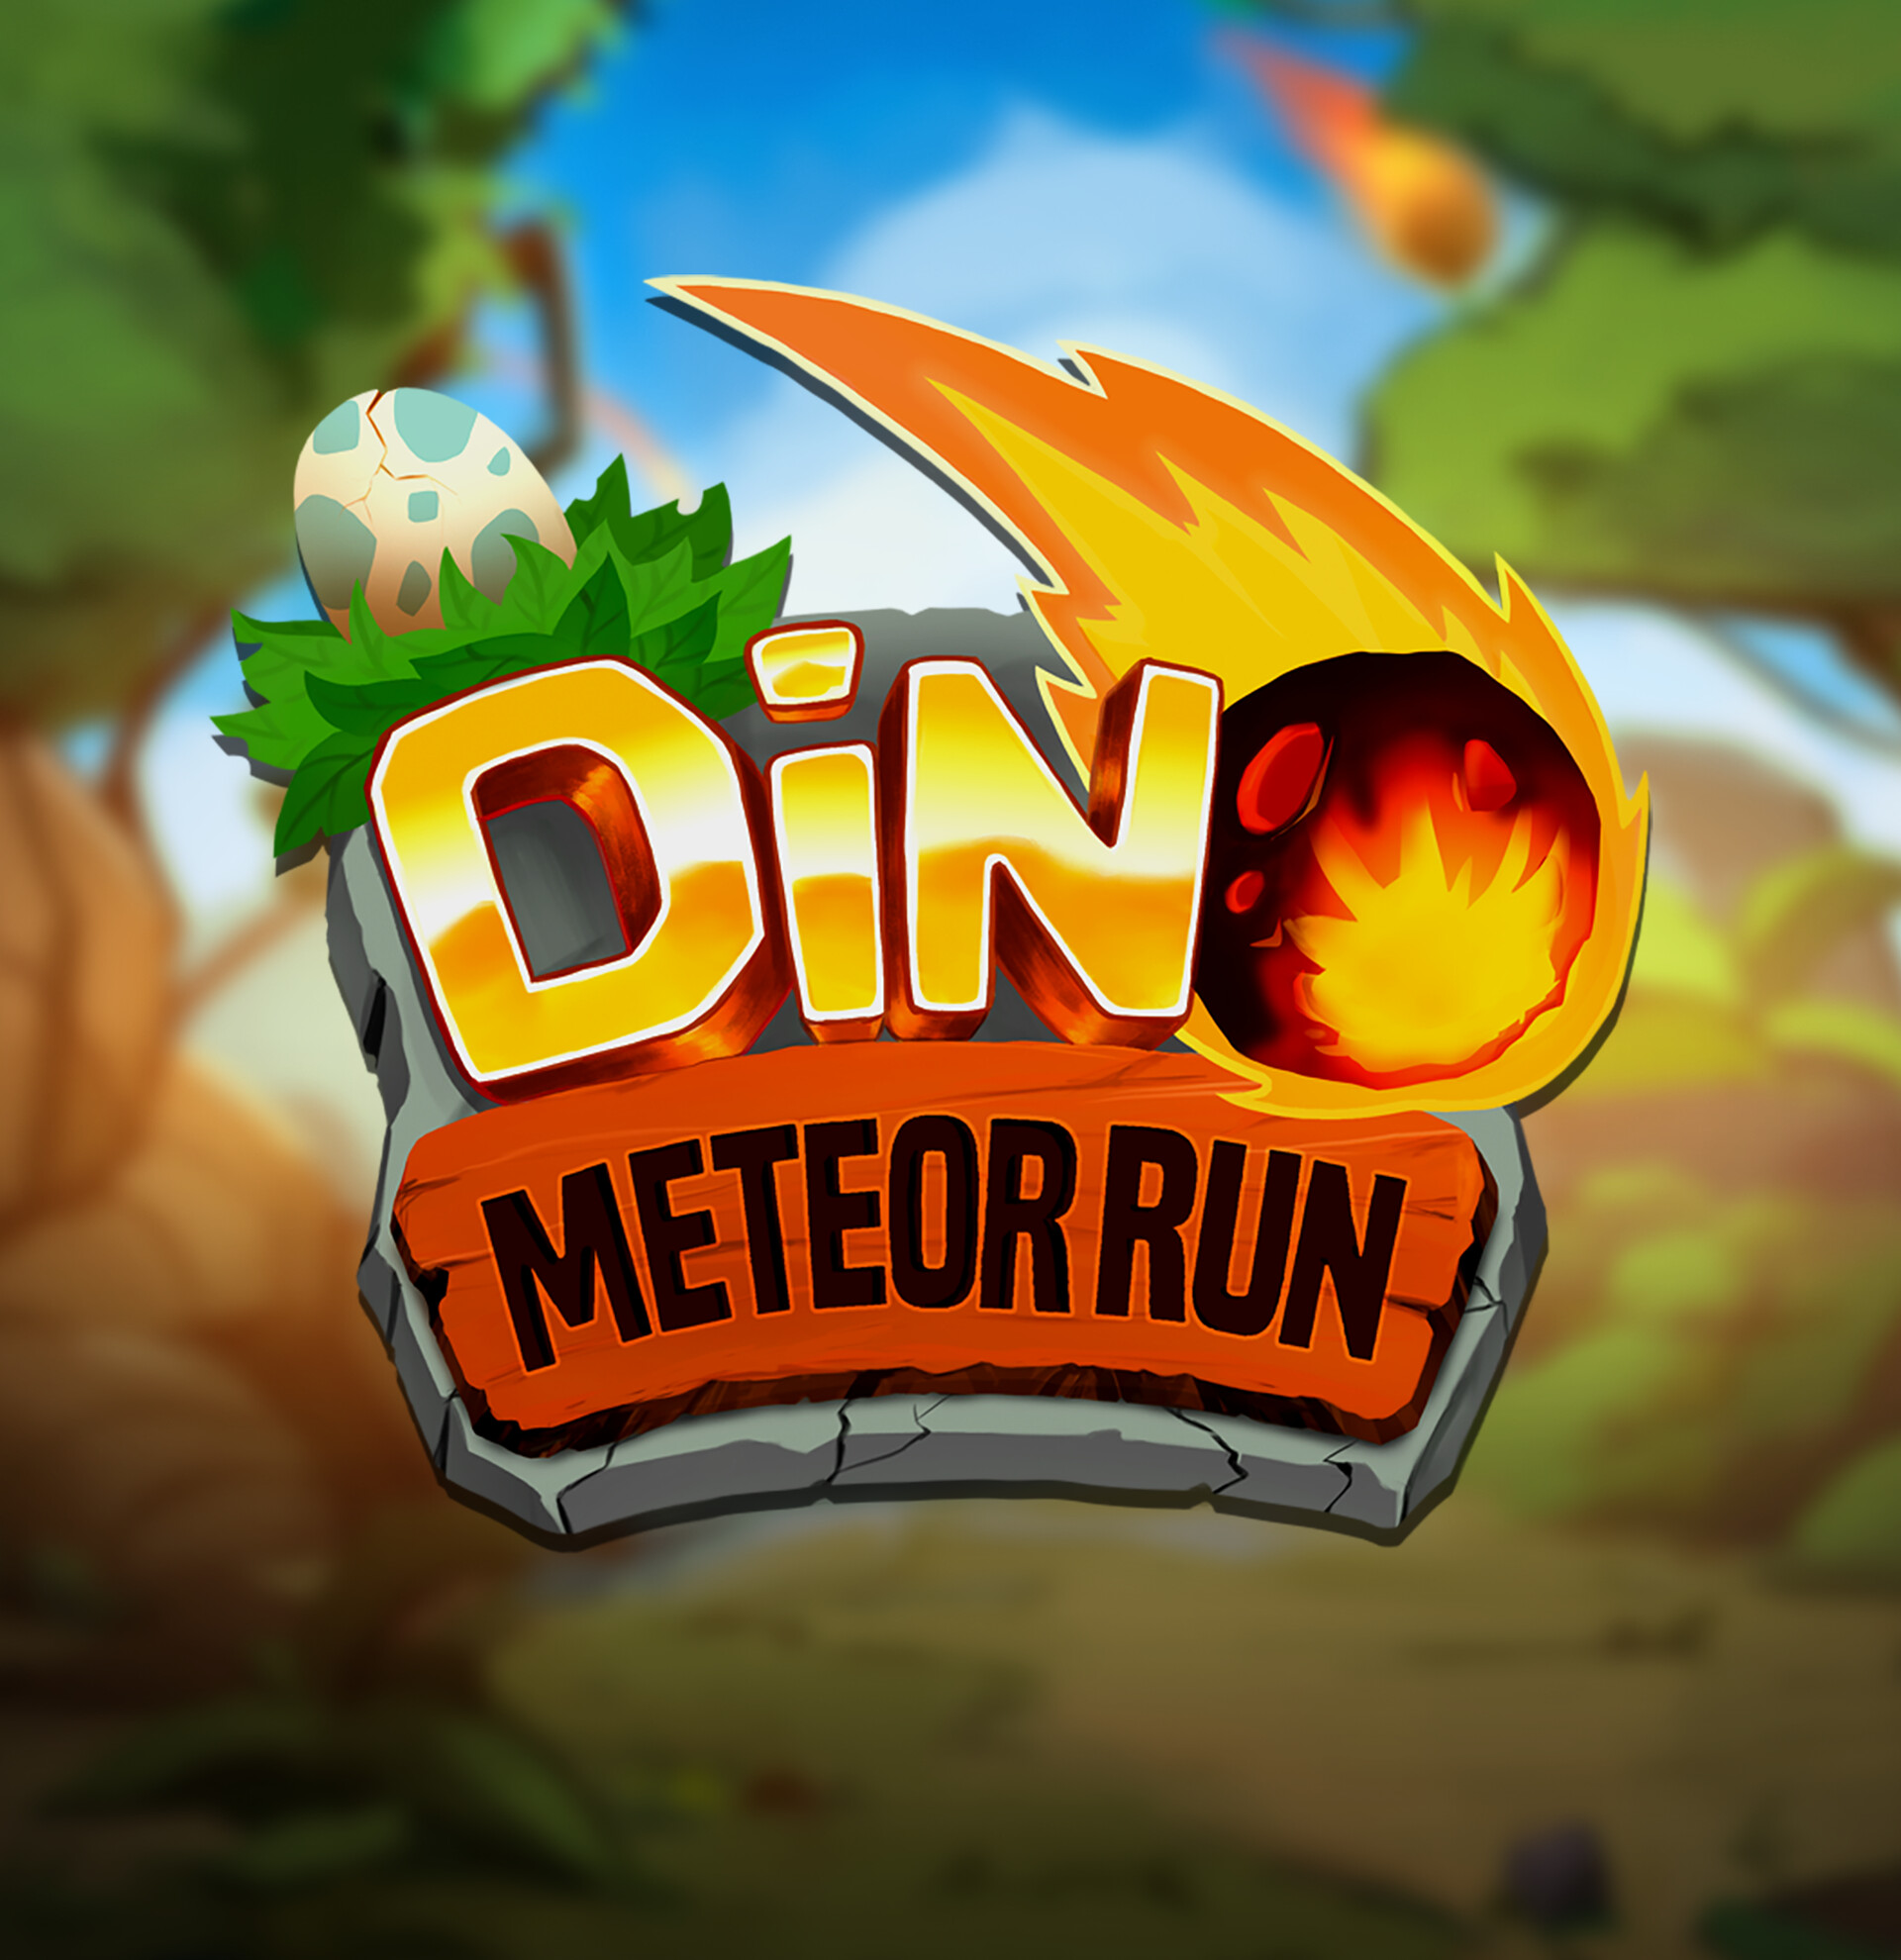 Dino Meteor Run! on Behance